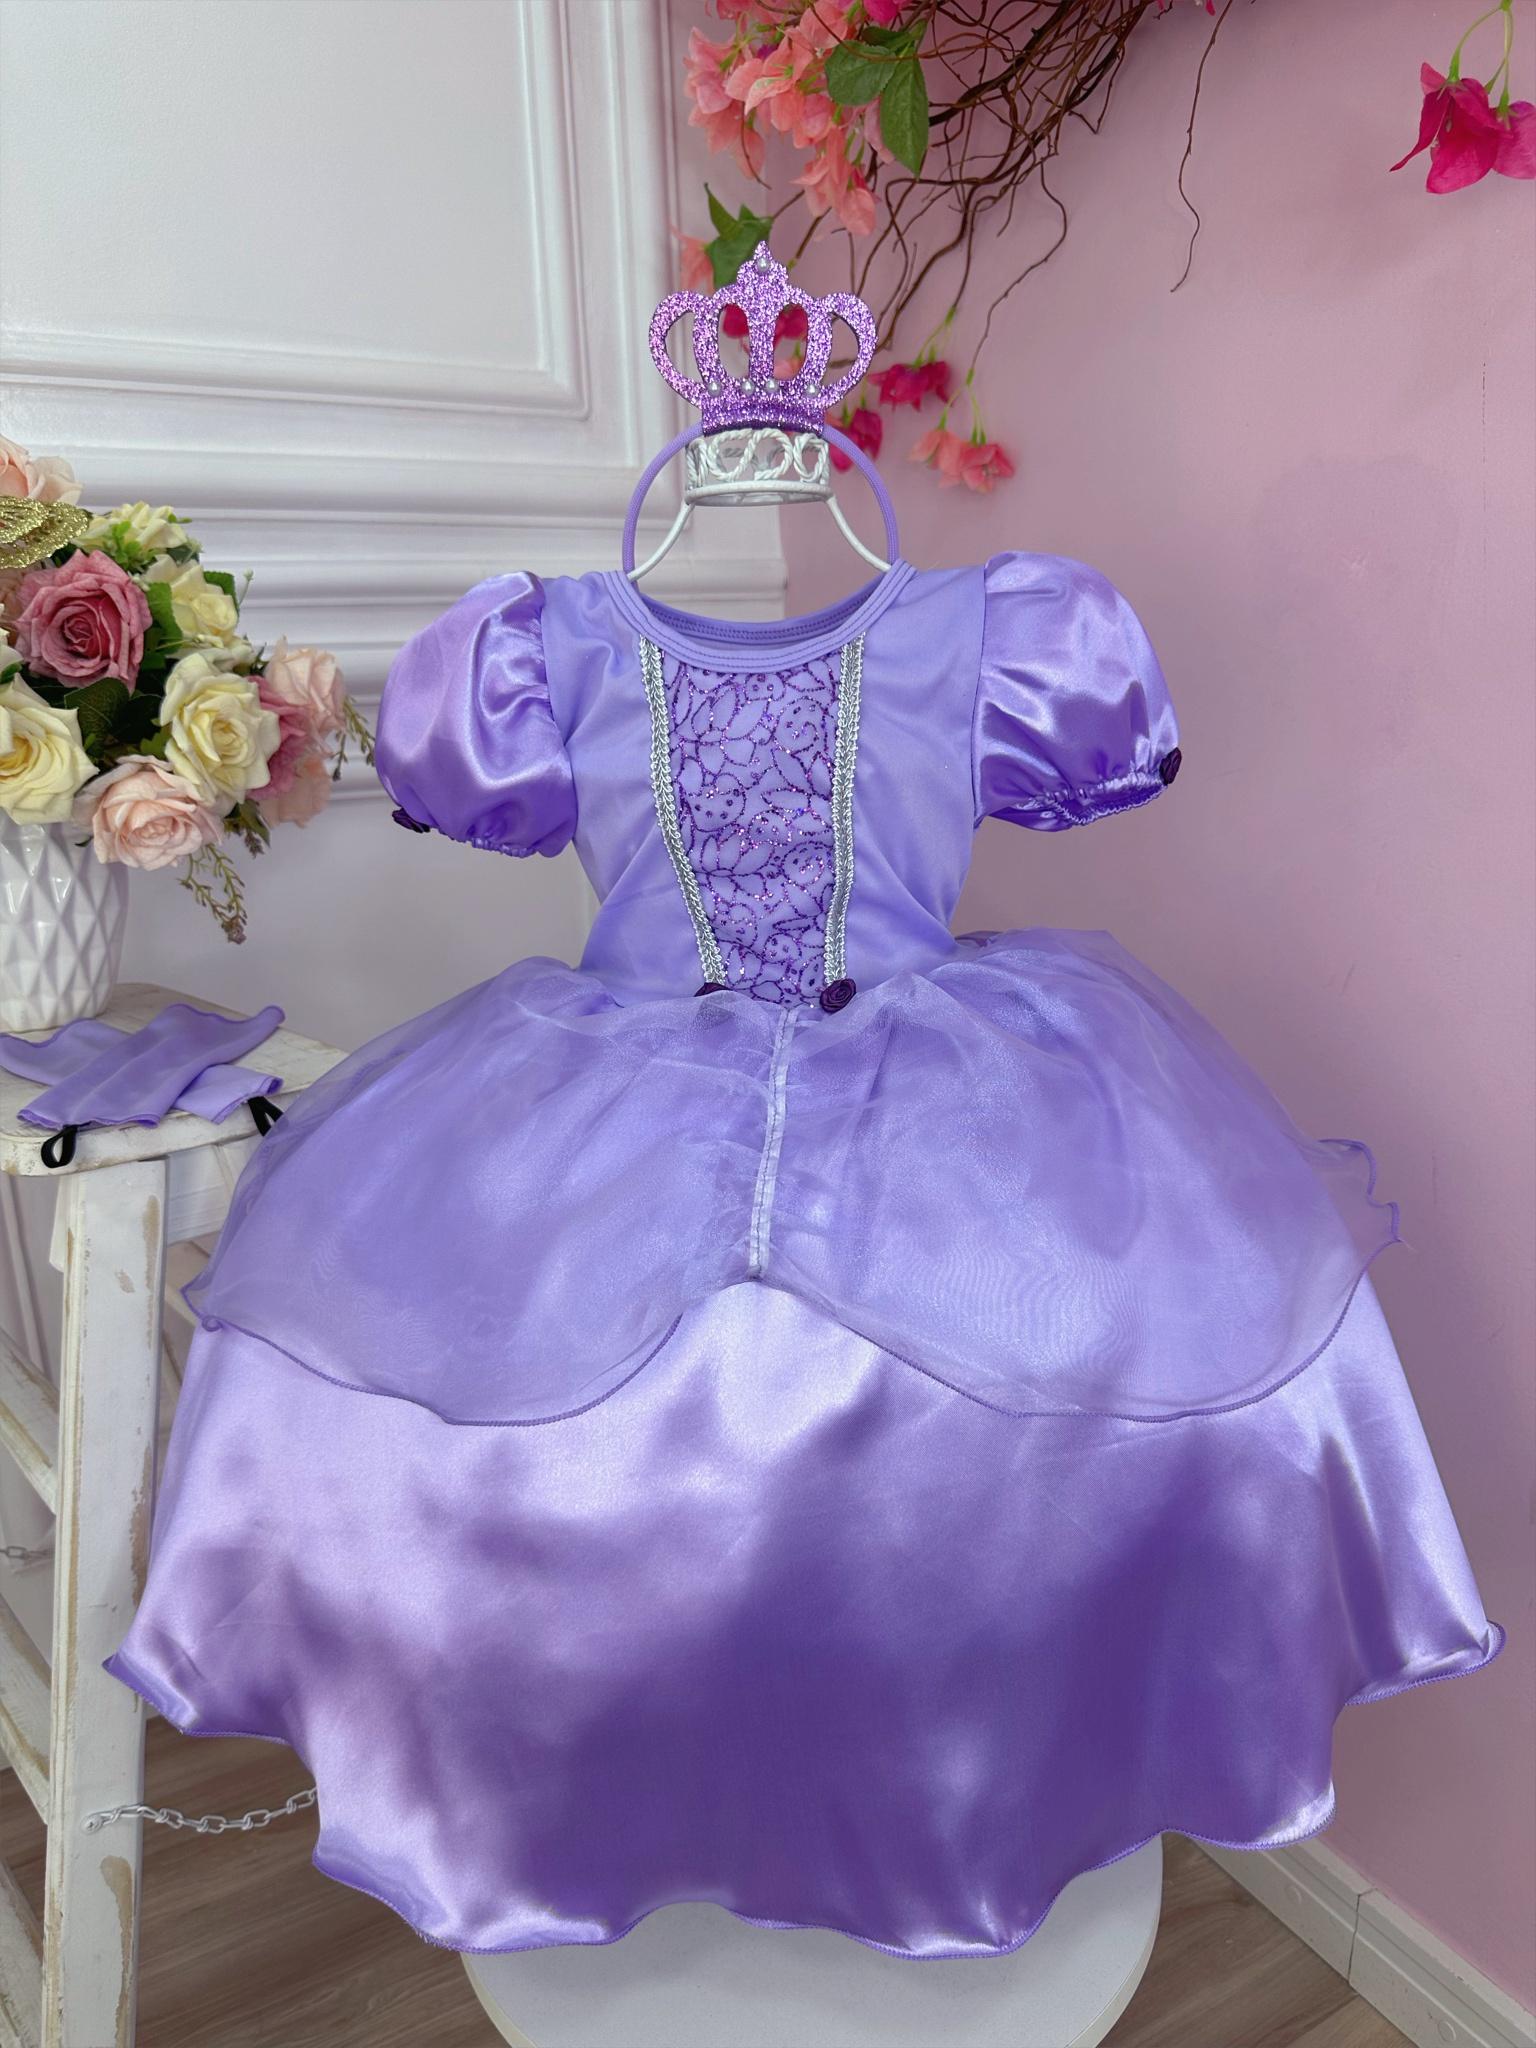 Fantasia Infantil Princesa Sofia com Tiara e Luva Festa